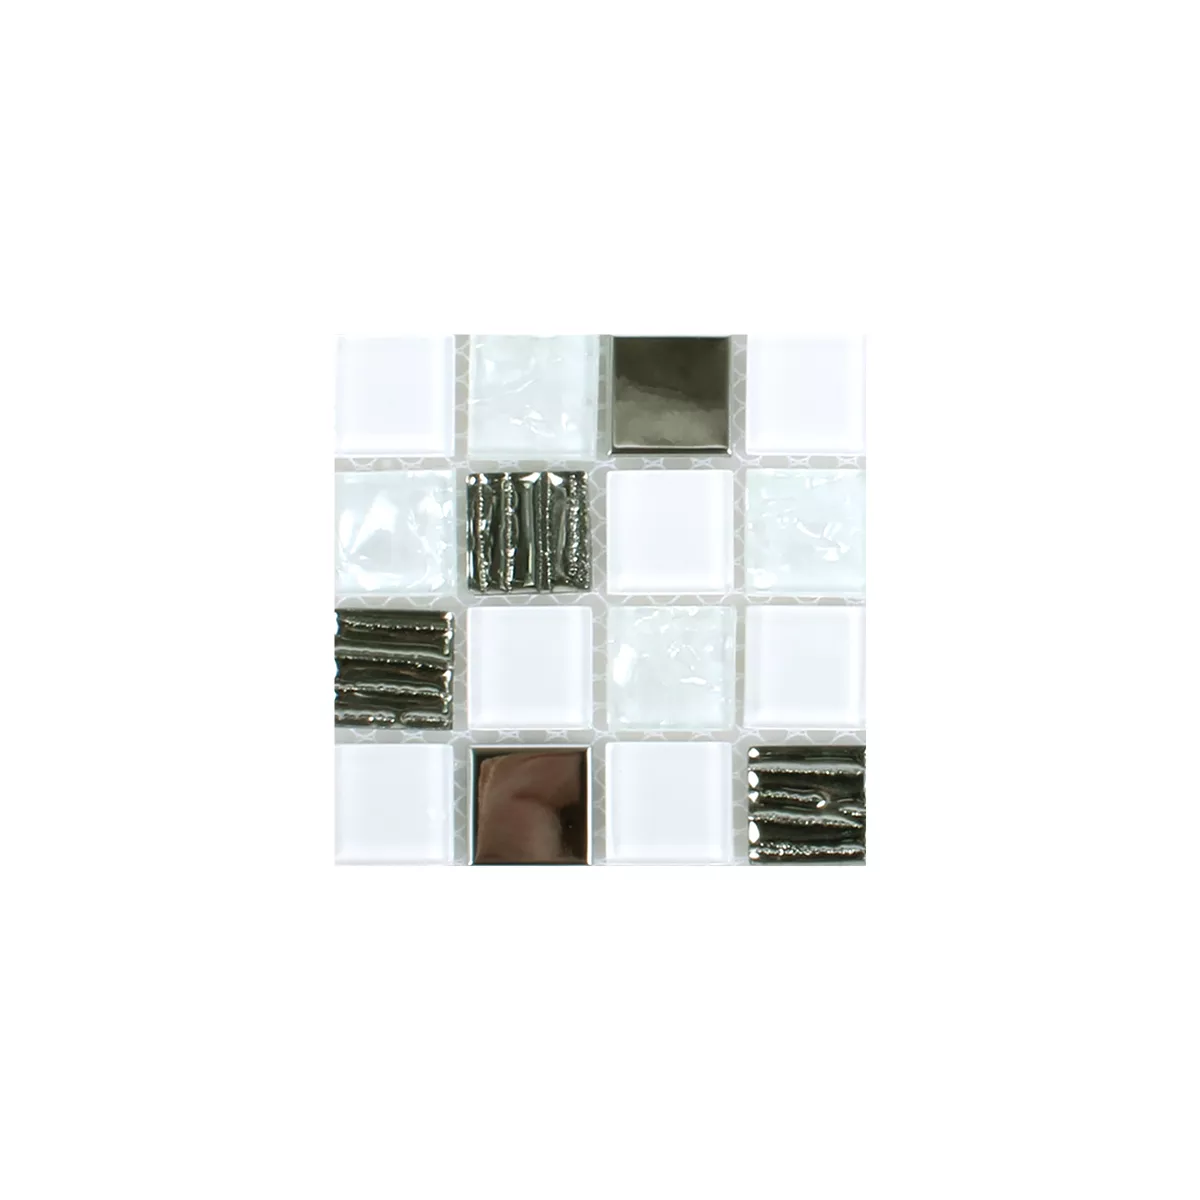 Sample Mosaic Tiles Admont White Diamant Quadrat